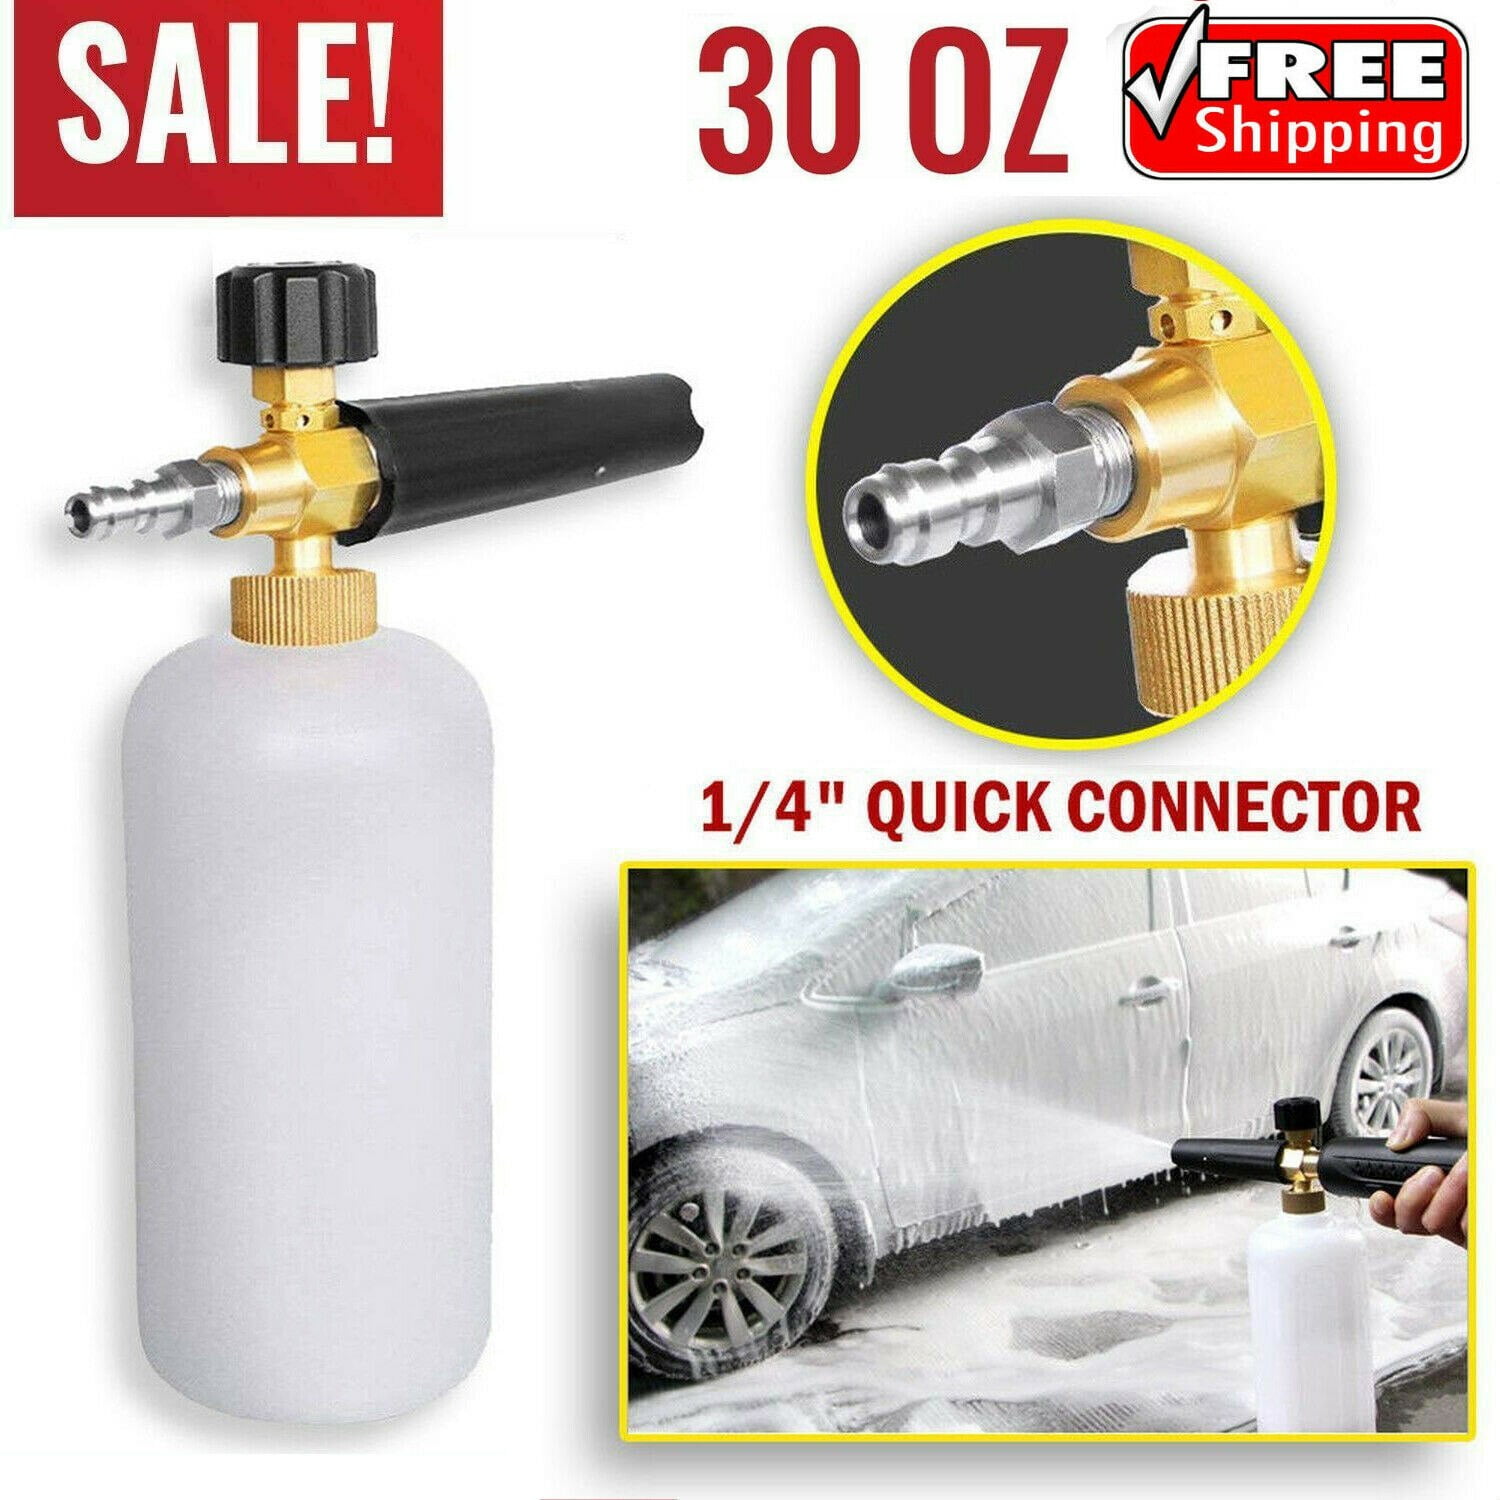 Snow Foam Lance Cannon Pressure Washer Gun Car Foamer Wash Bottle & Adapter S.ec 